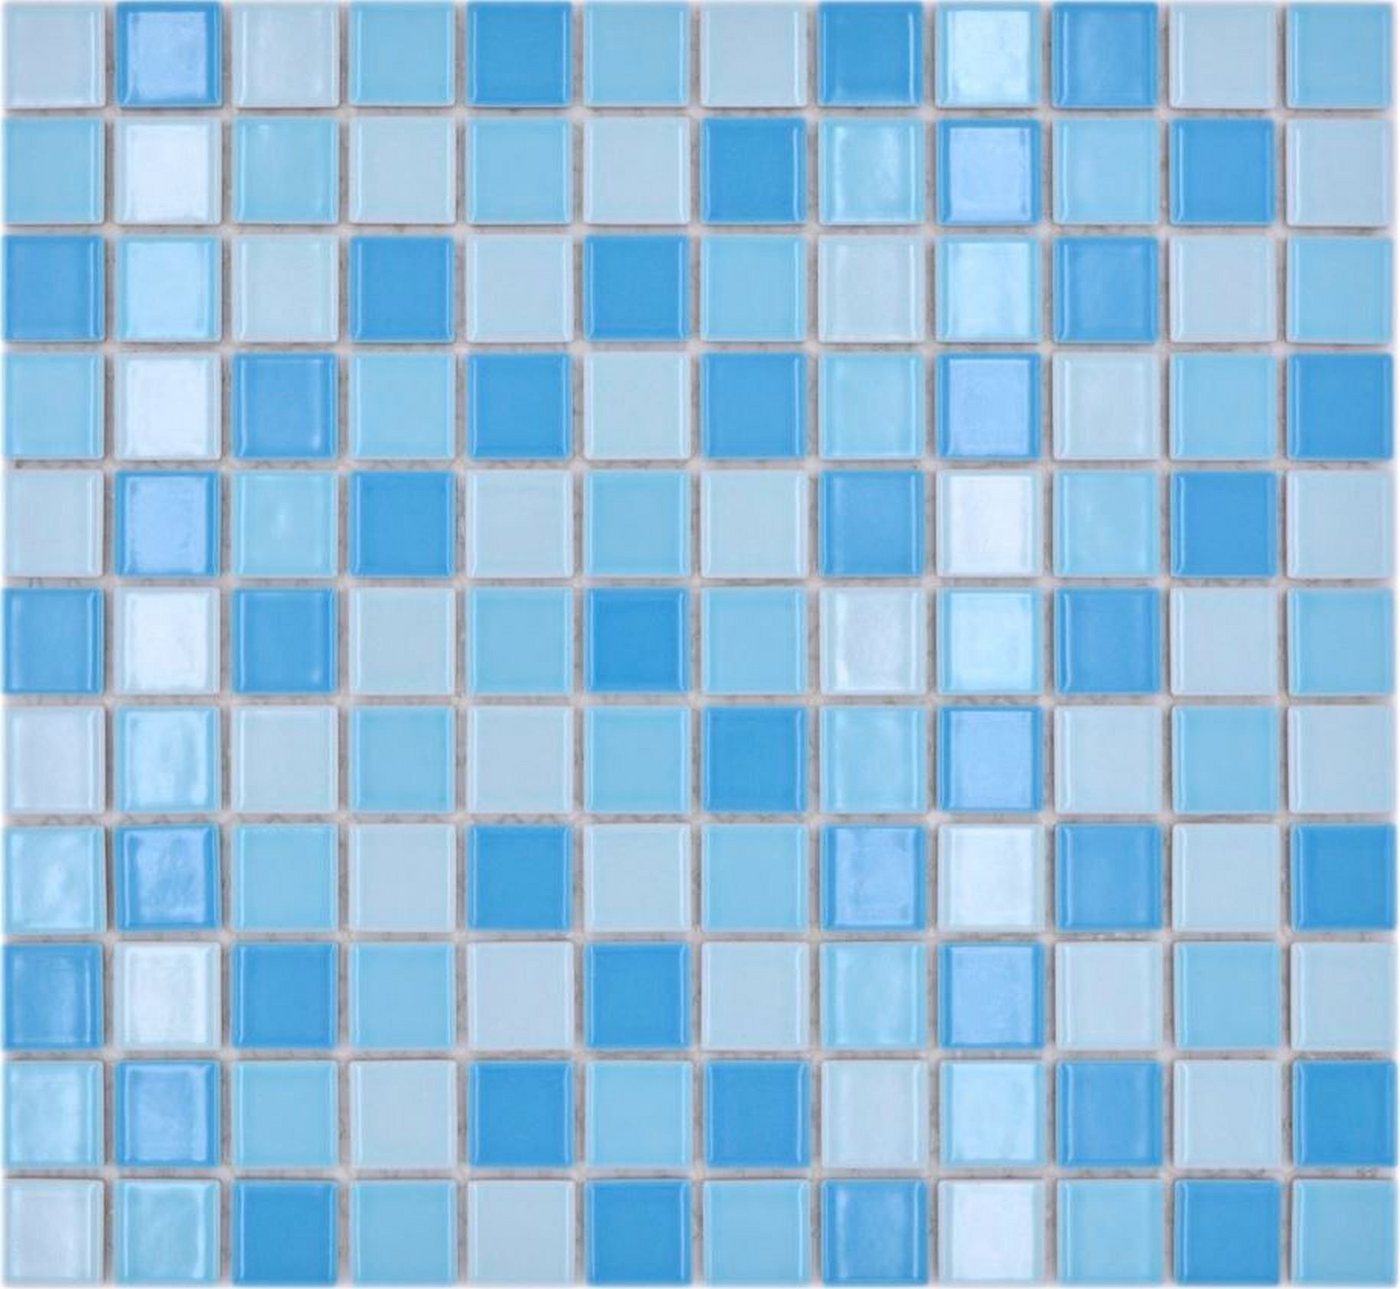 Mosani Mosaikfliesen Keramik Mosaik Schwimmbad Mosaikfliese blau mix glänzend Duschwand von Mosani